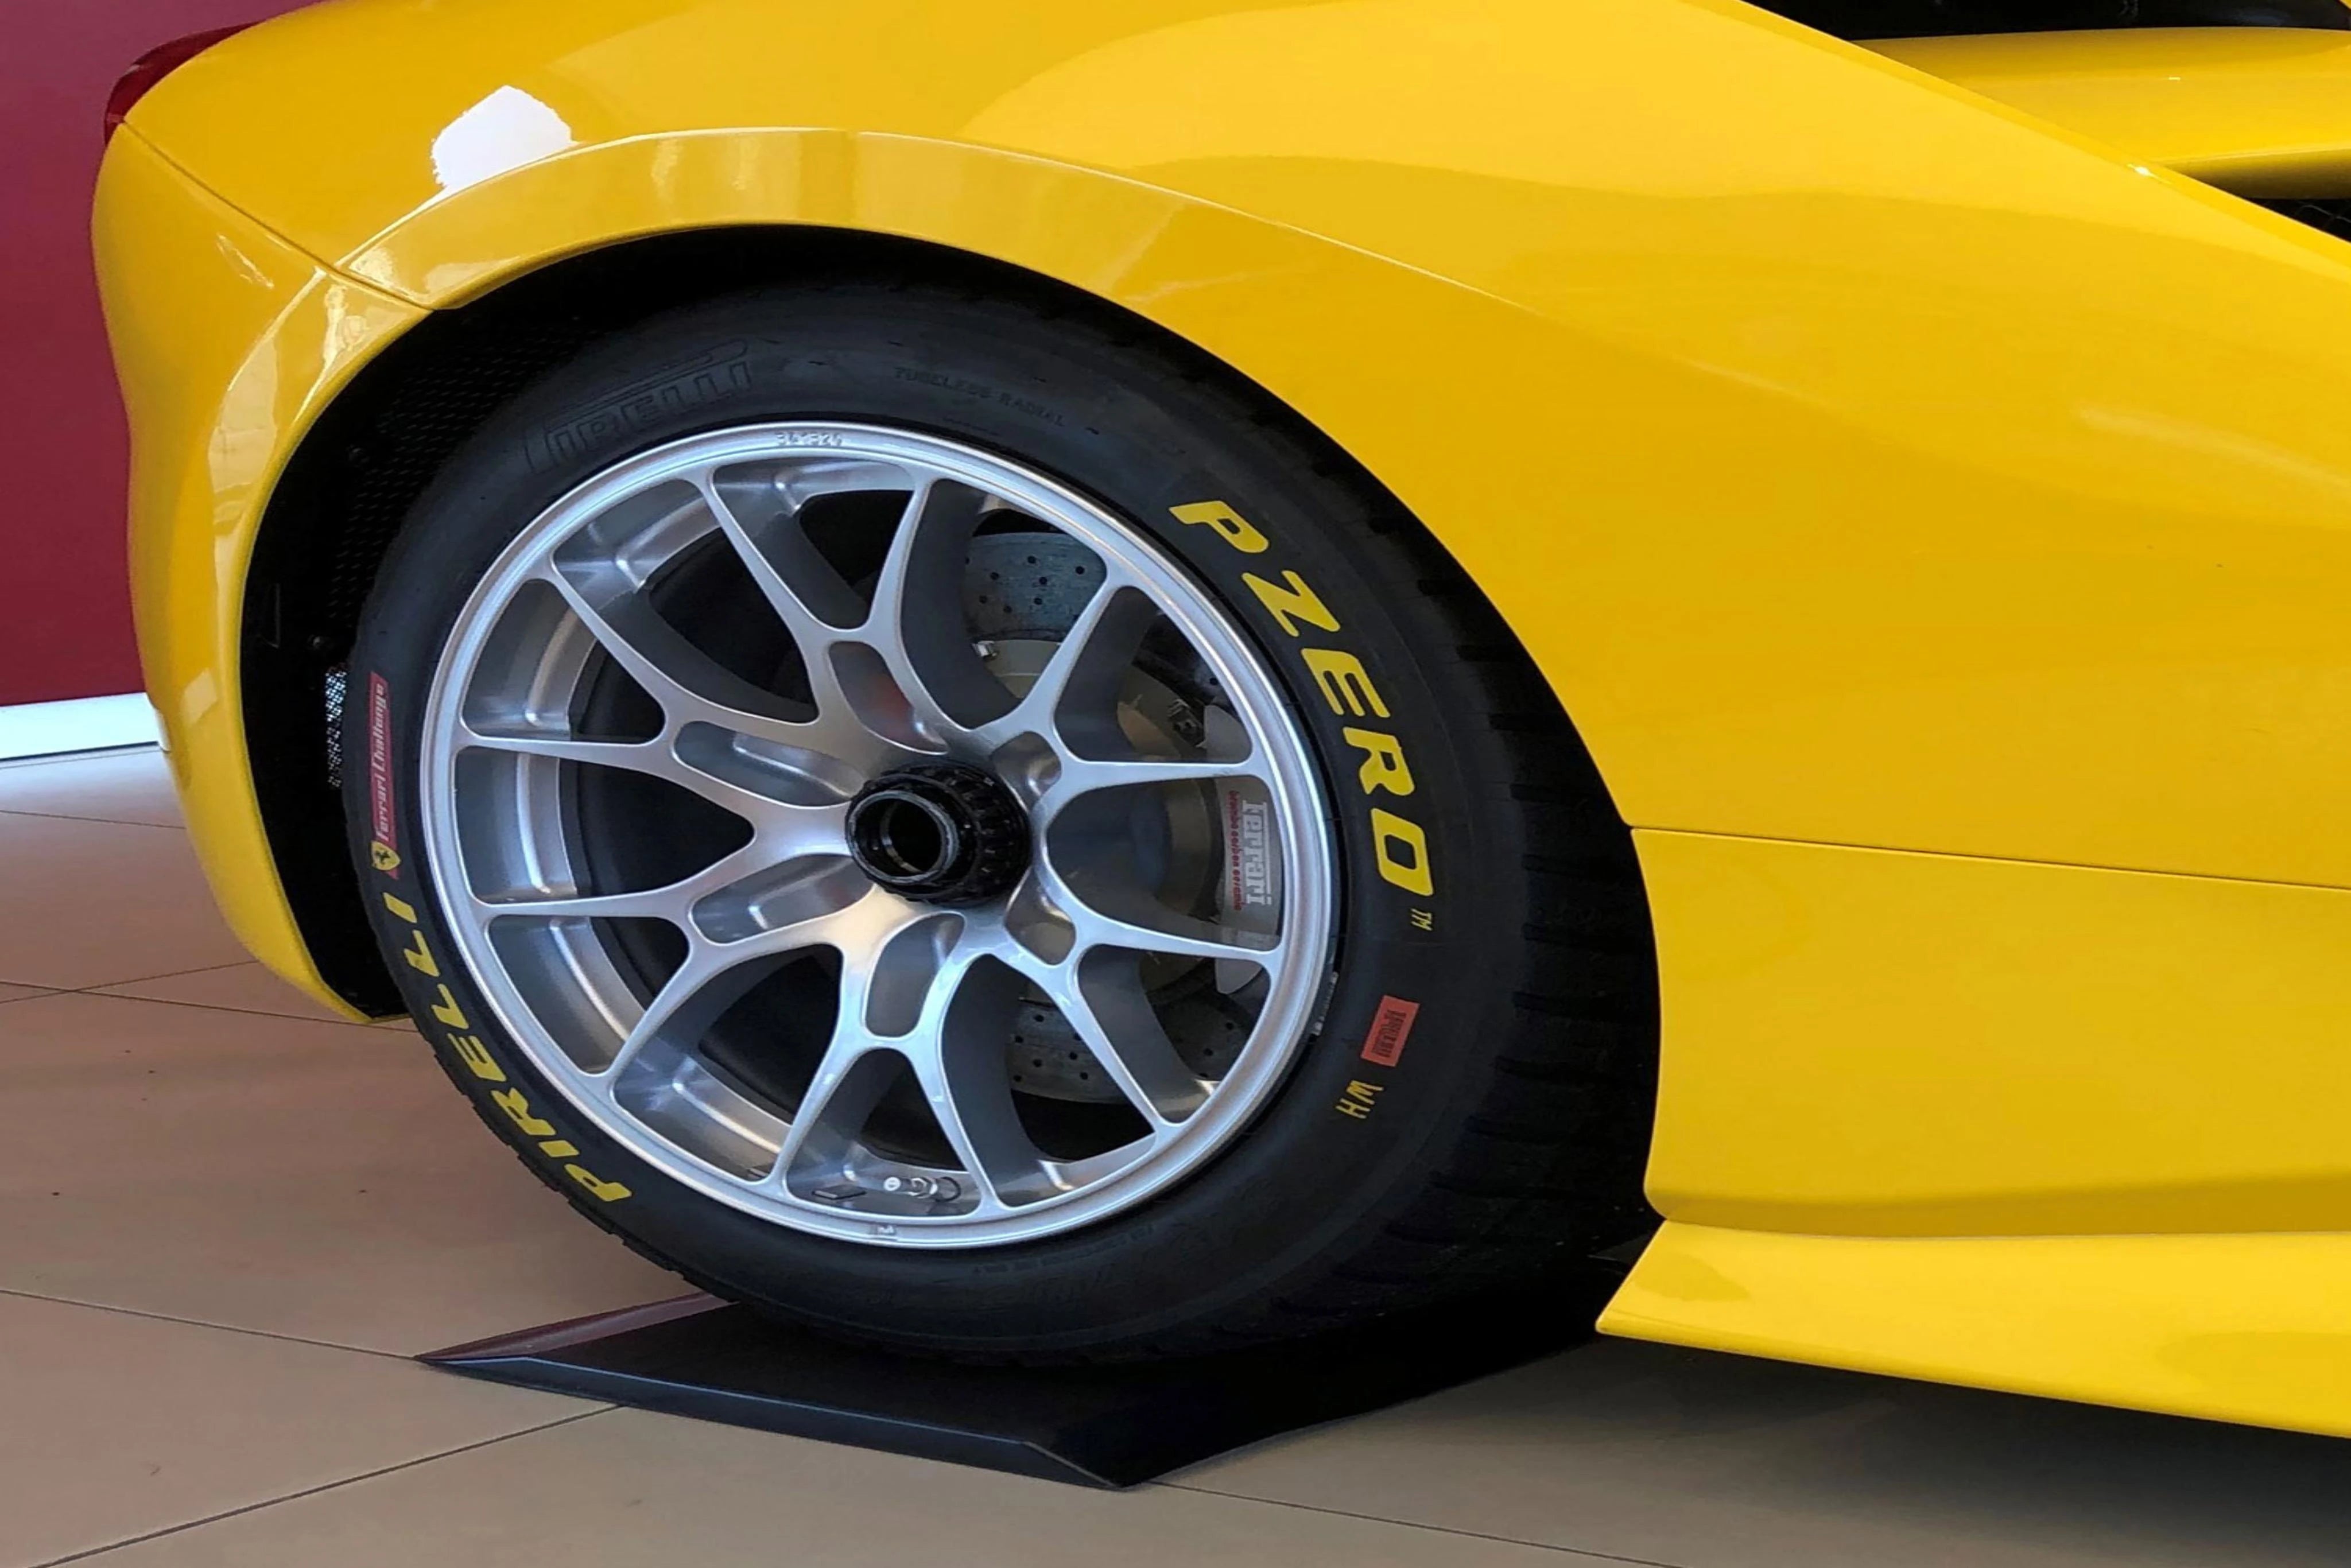 Gelber Ferrari steht mit einem reifen auf einem schwarzen Reifenschoner aus dem patentierten Flexigel®.